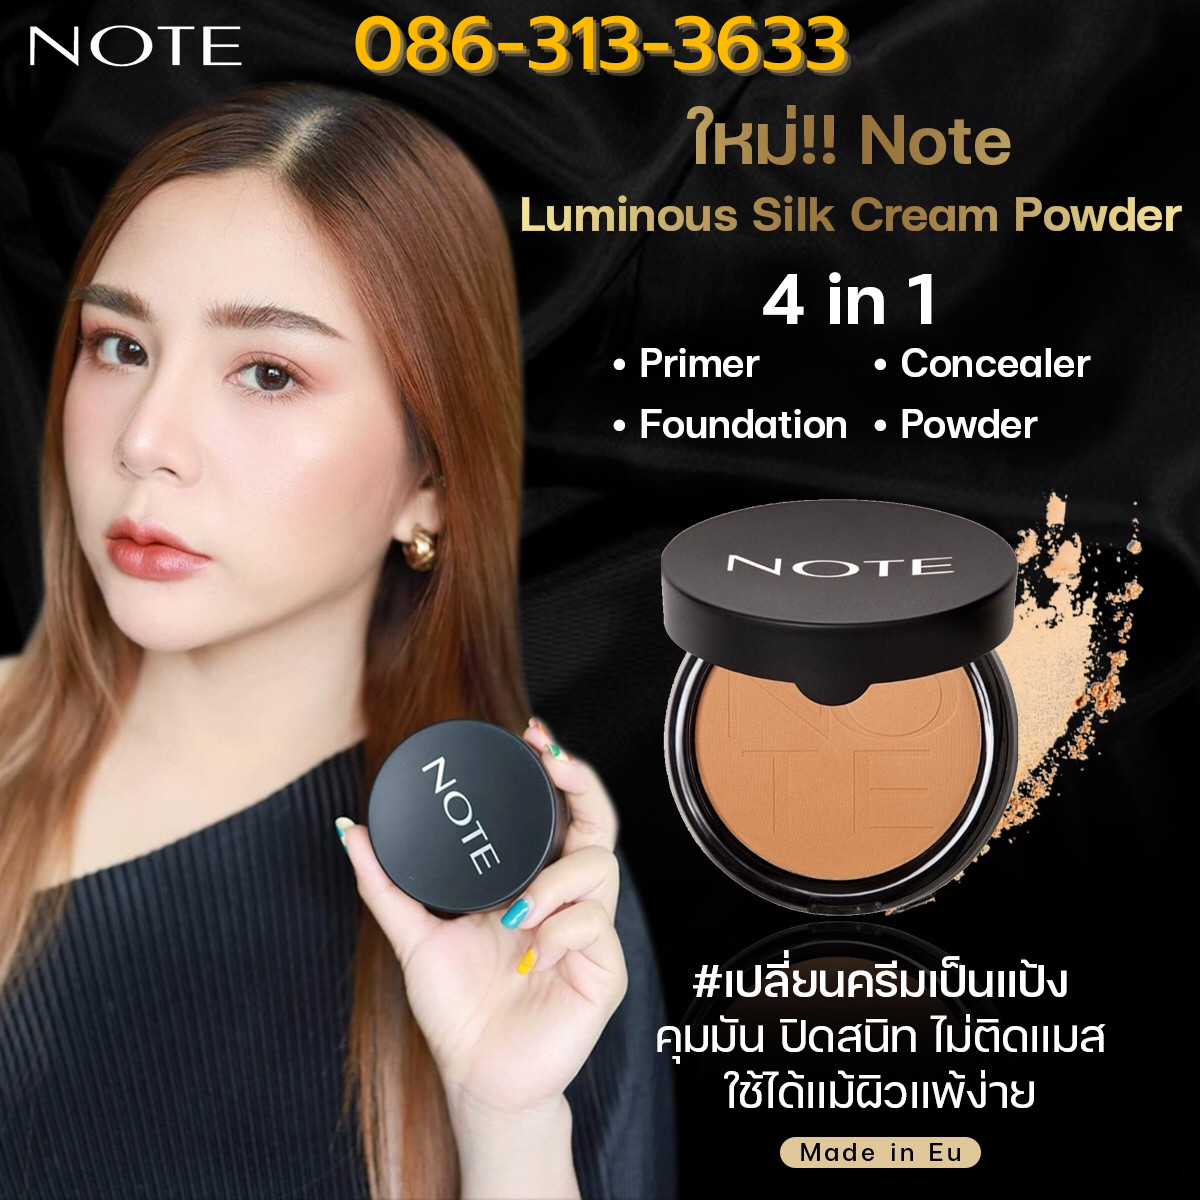 Luminous Silk Cream Powder - NOTE Cosmetique